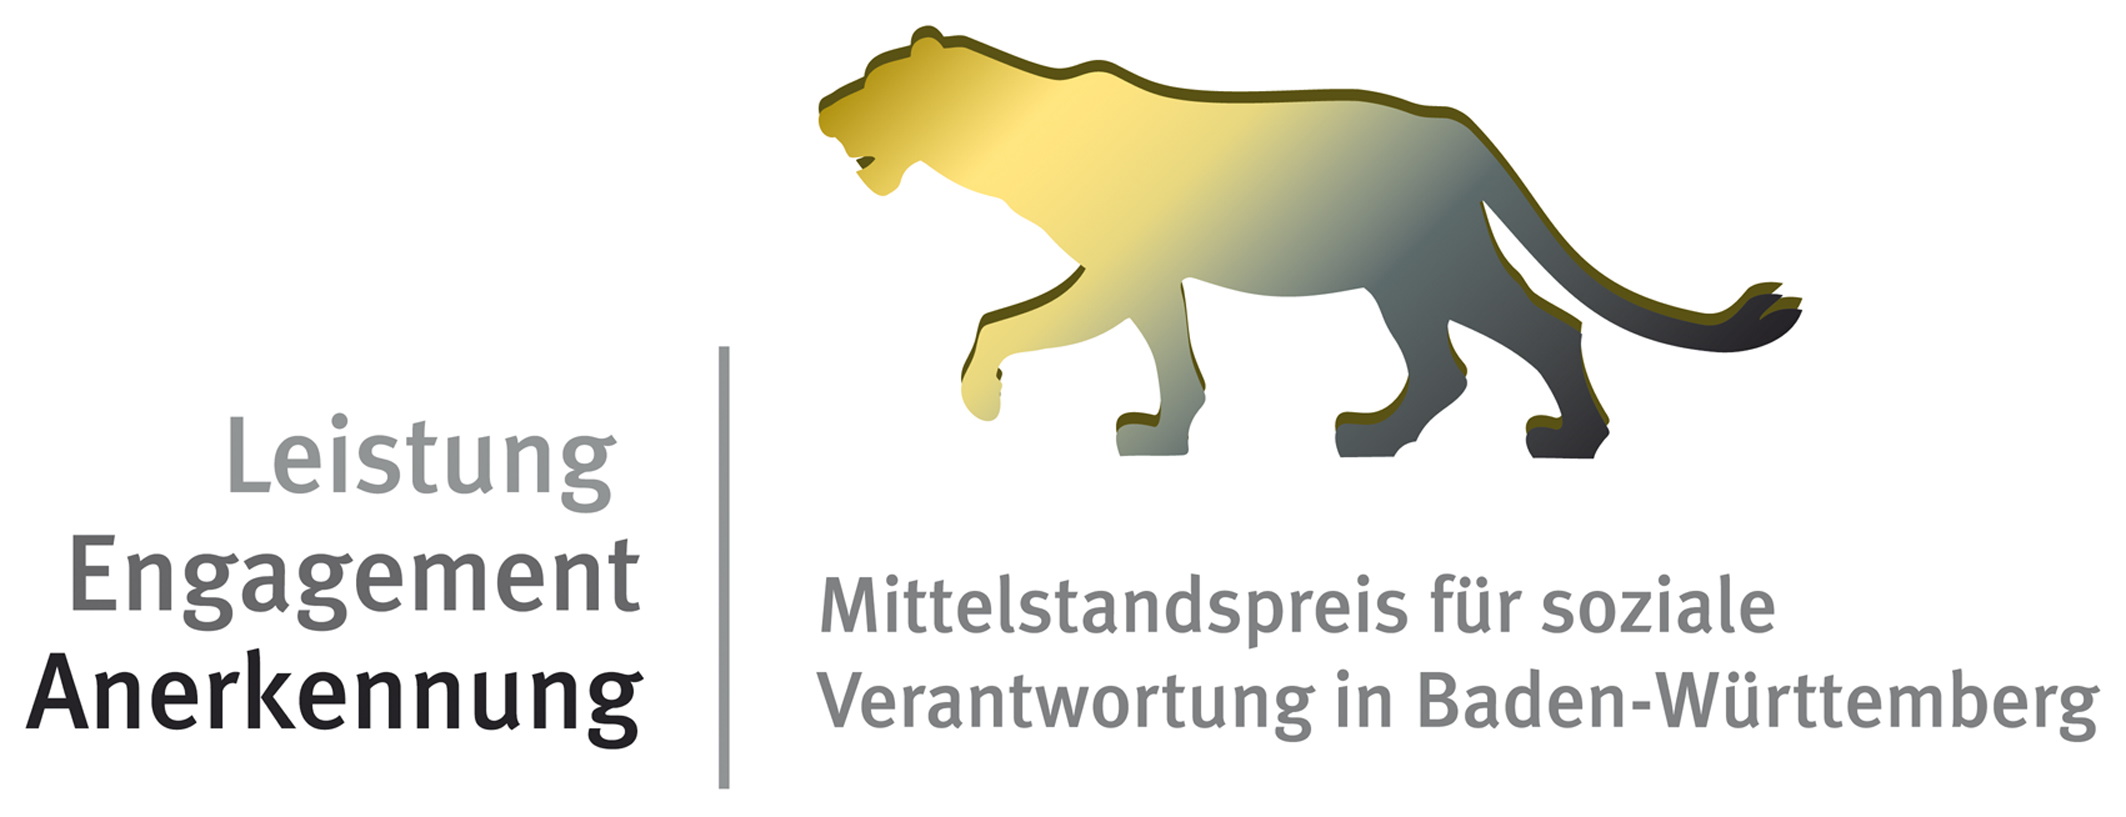  Mittelstandspeis für soziale Verantwortung in Baden-Württemberg 